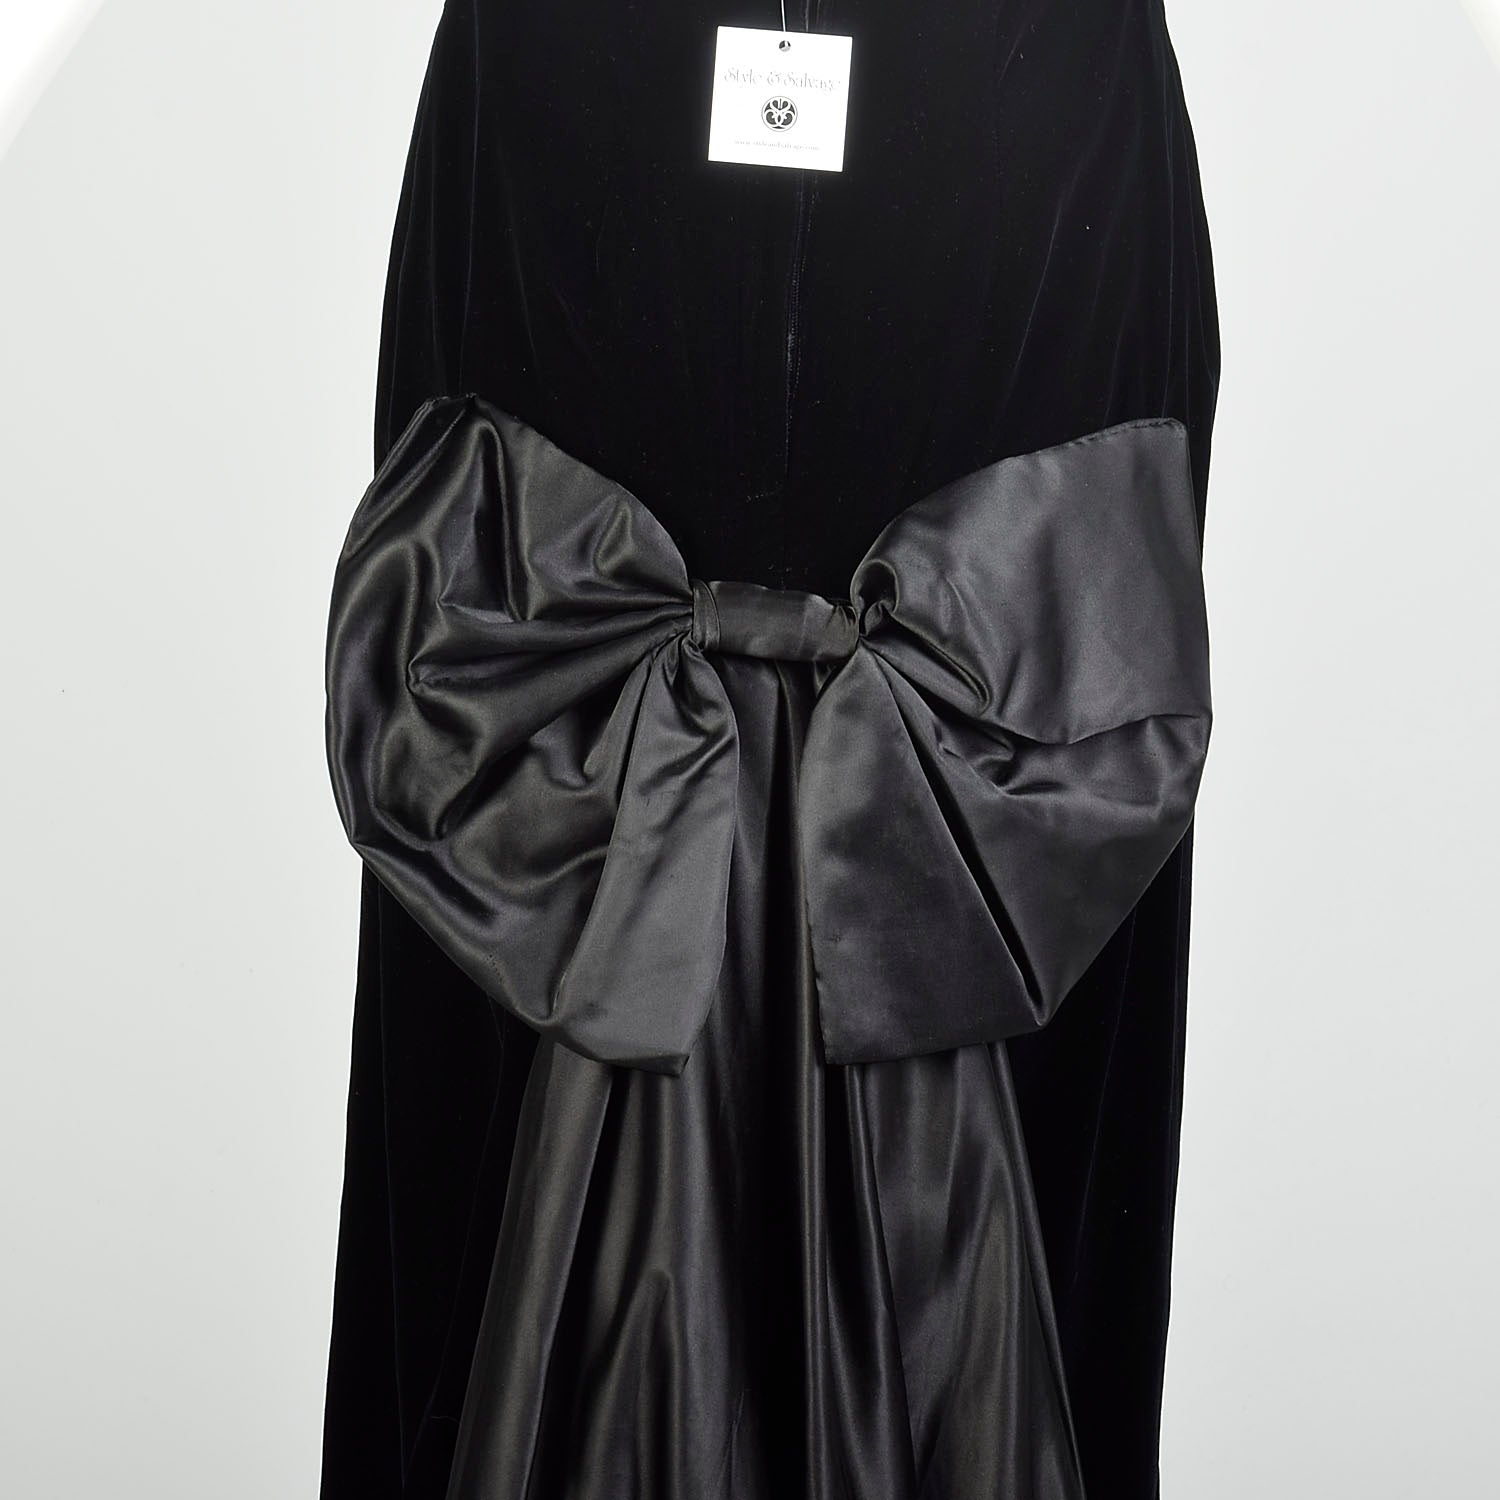 Small 1980s Black Velvet Mermaid Train Backless Formal Evening Gown Prom Dress